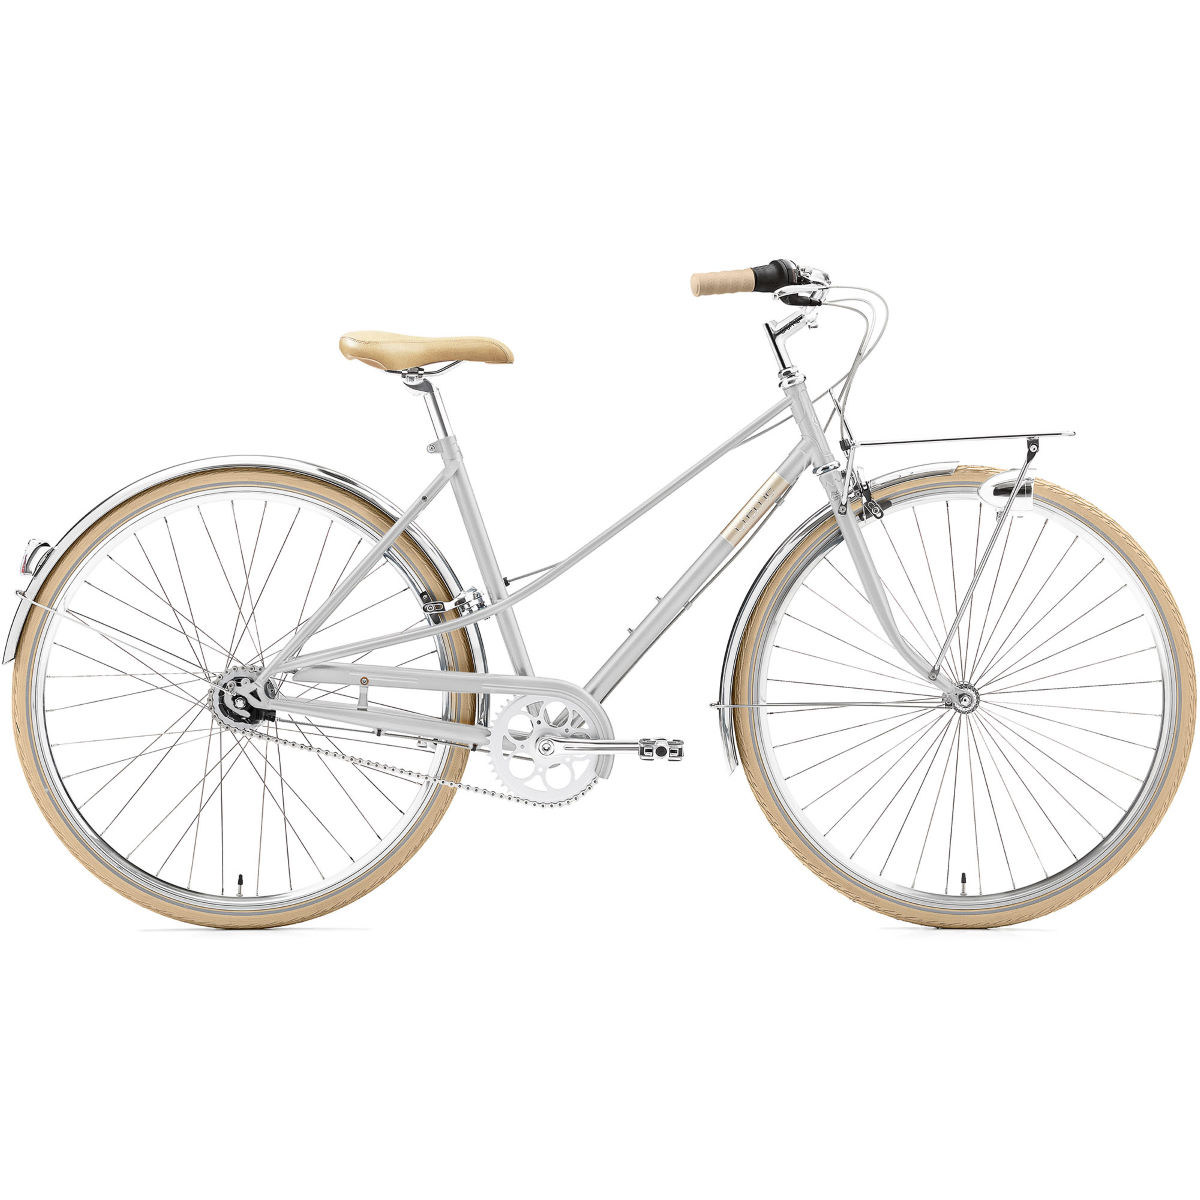 Bicicleta urbana Creme Caferacer Lady Solo (2021) - Bicicletas híbridas